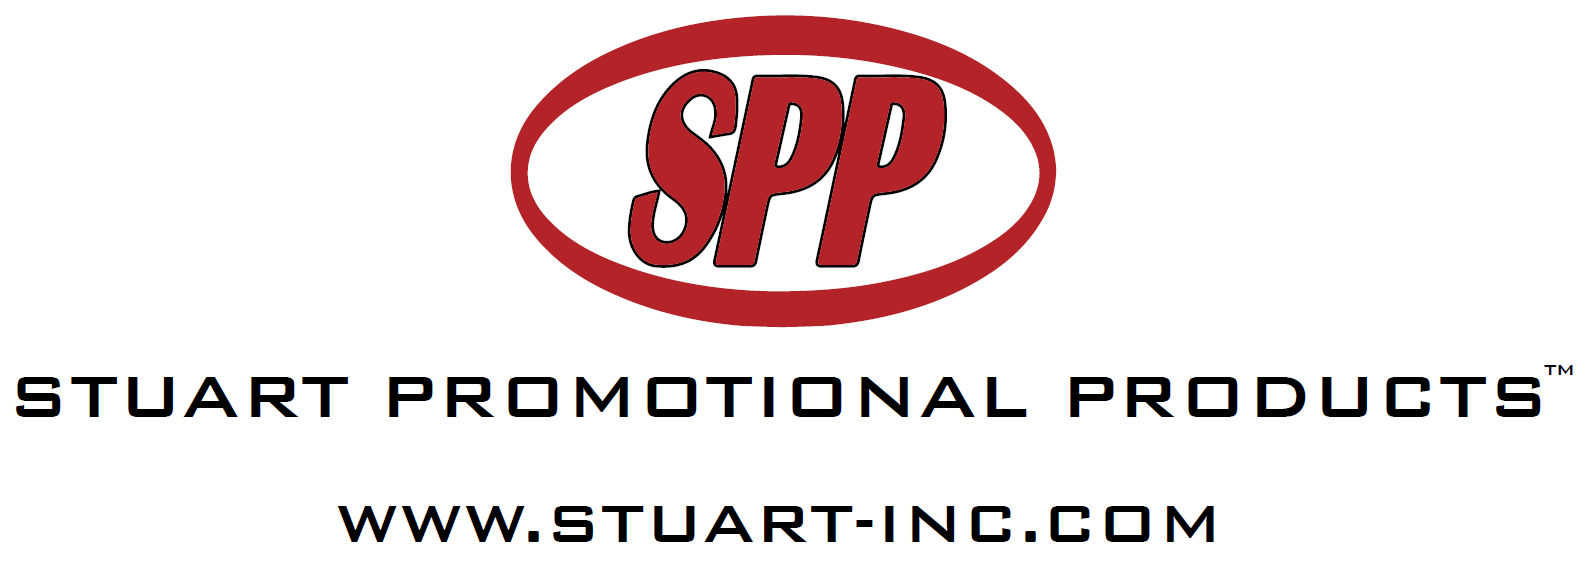 Stuart Promotional Products